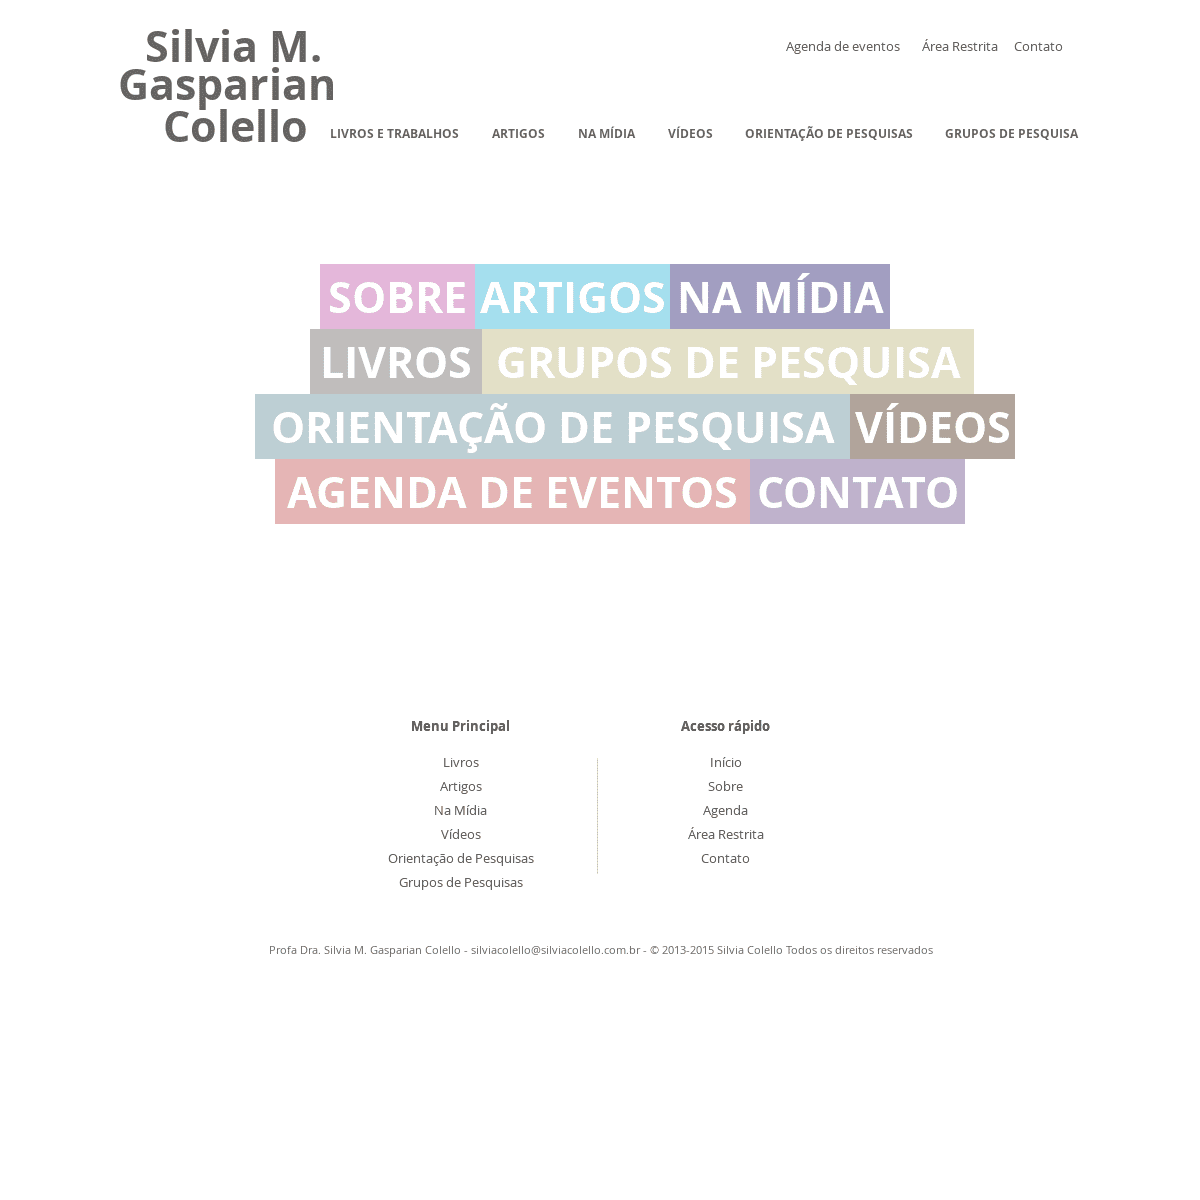 A complete backup of silviacolello.com.br